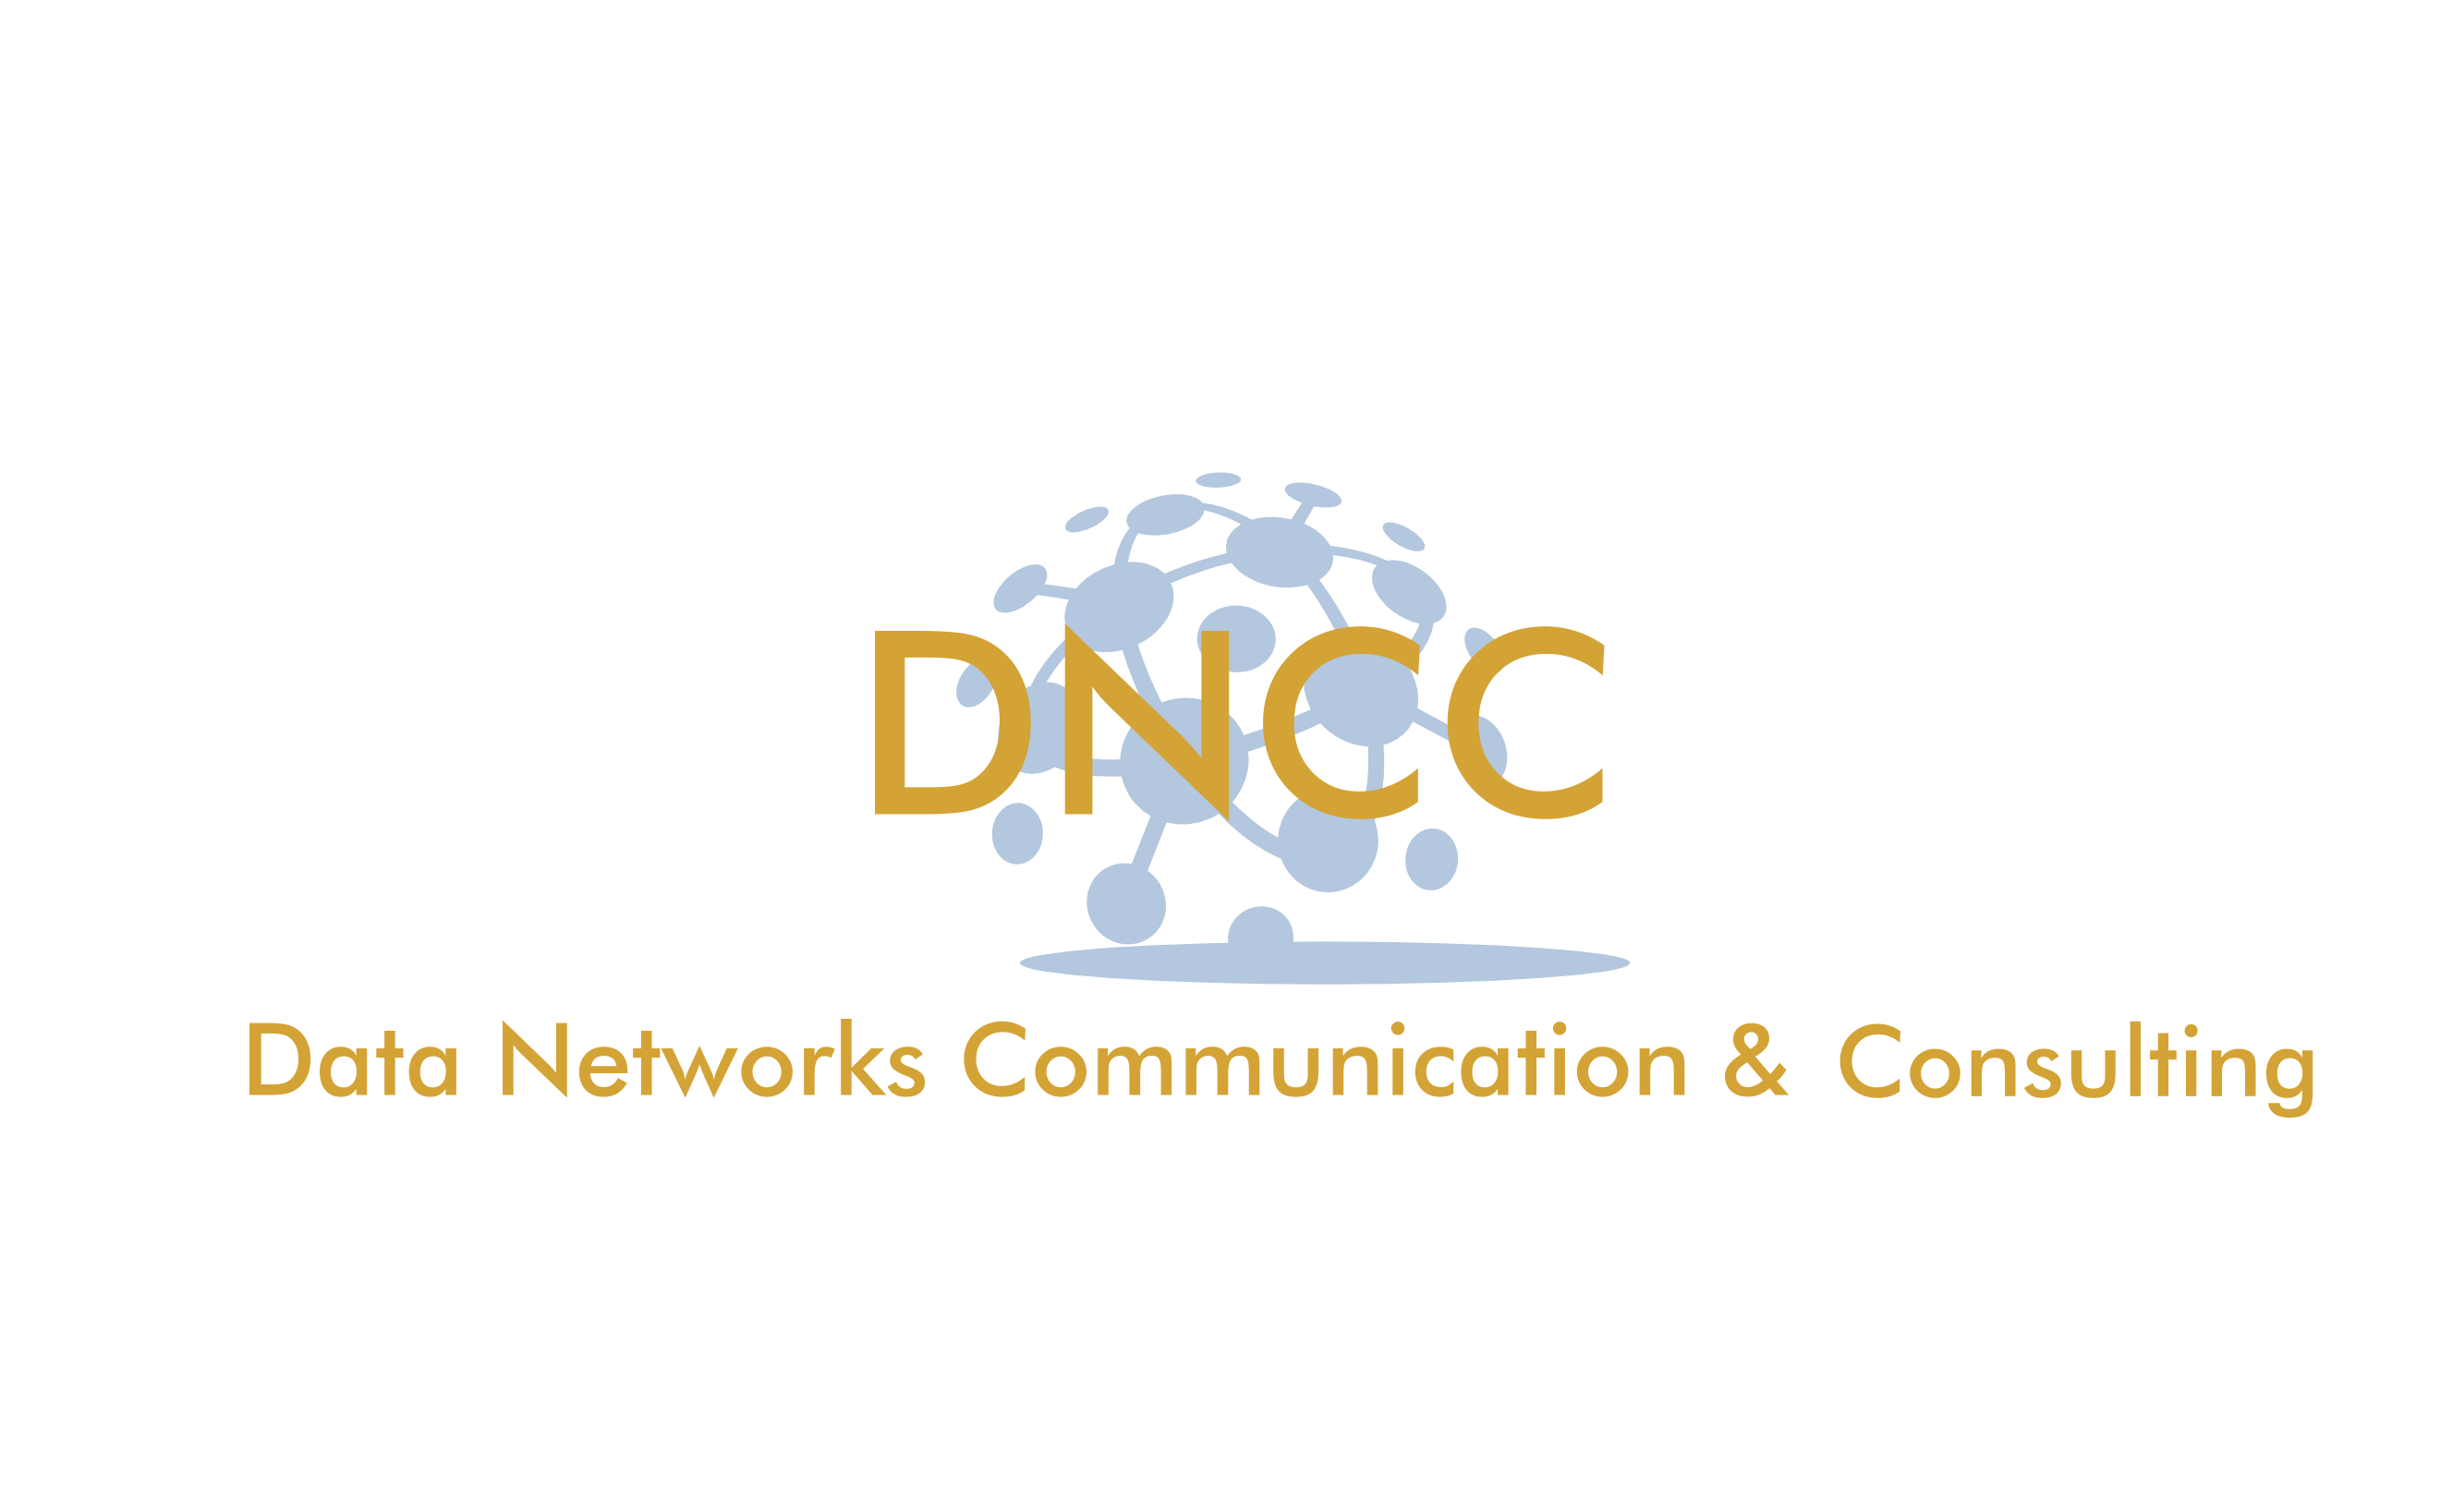 dncc logo